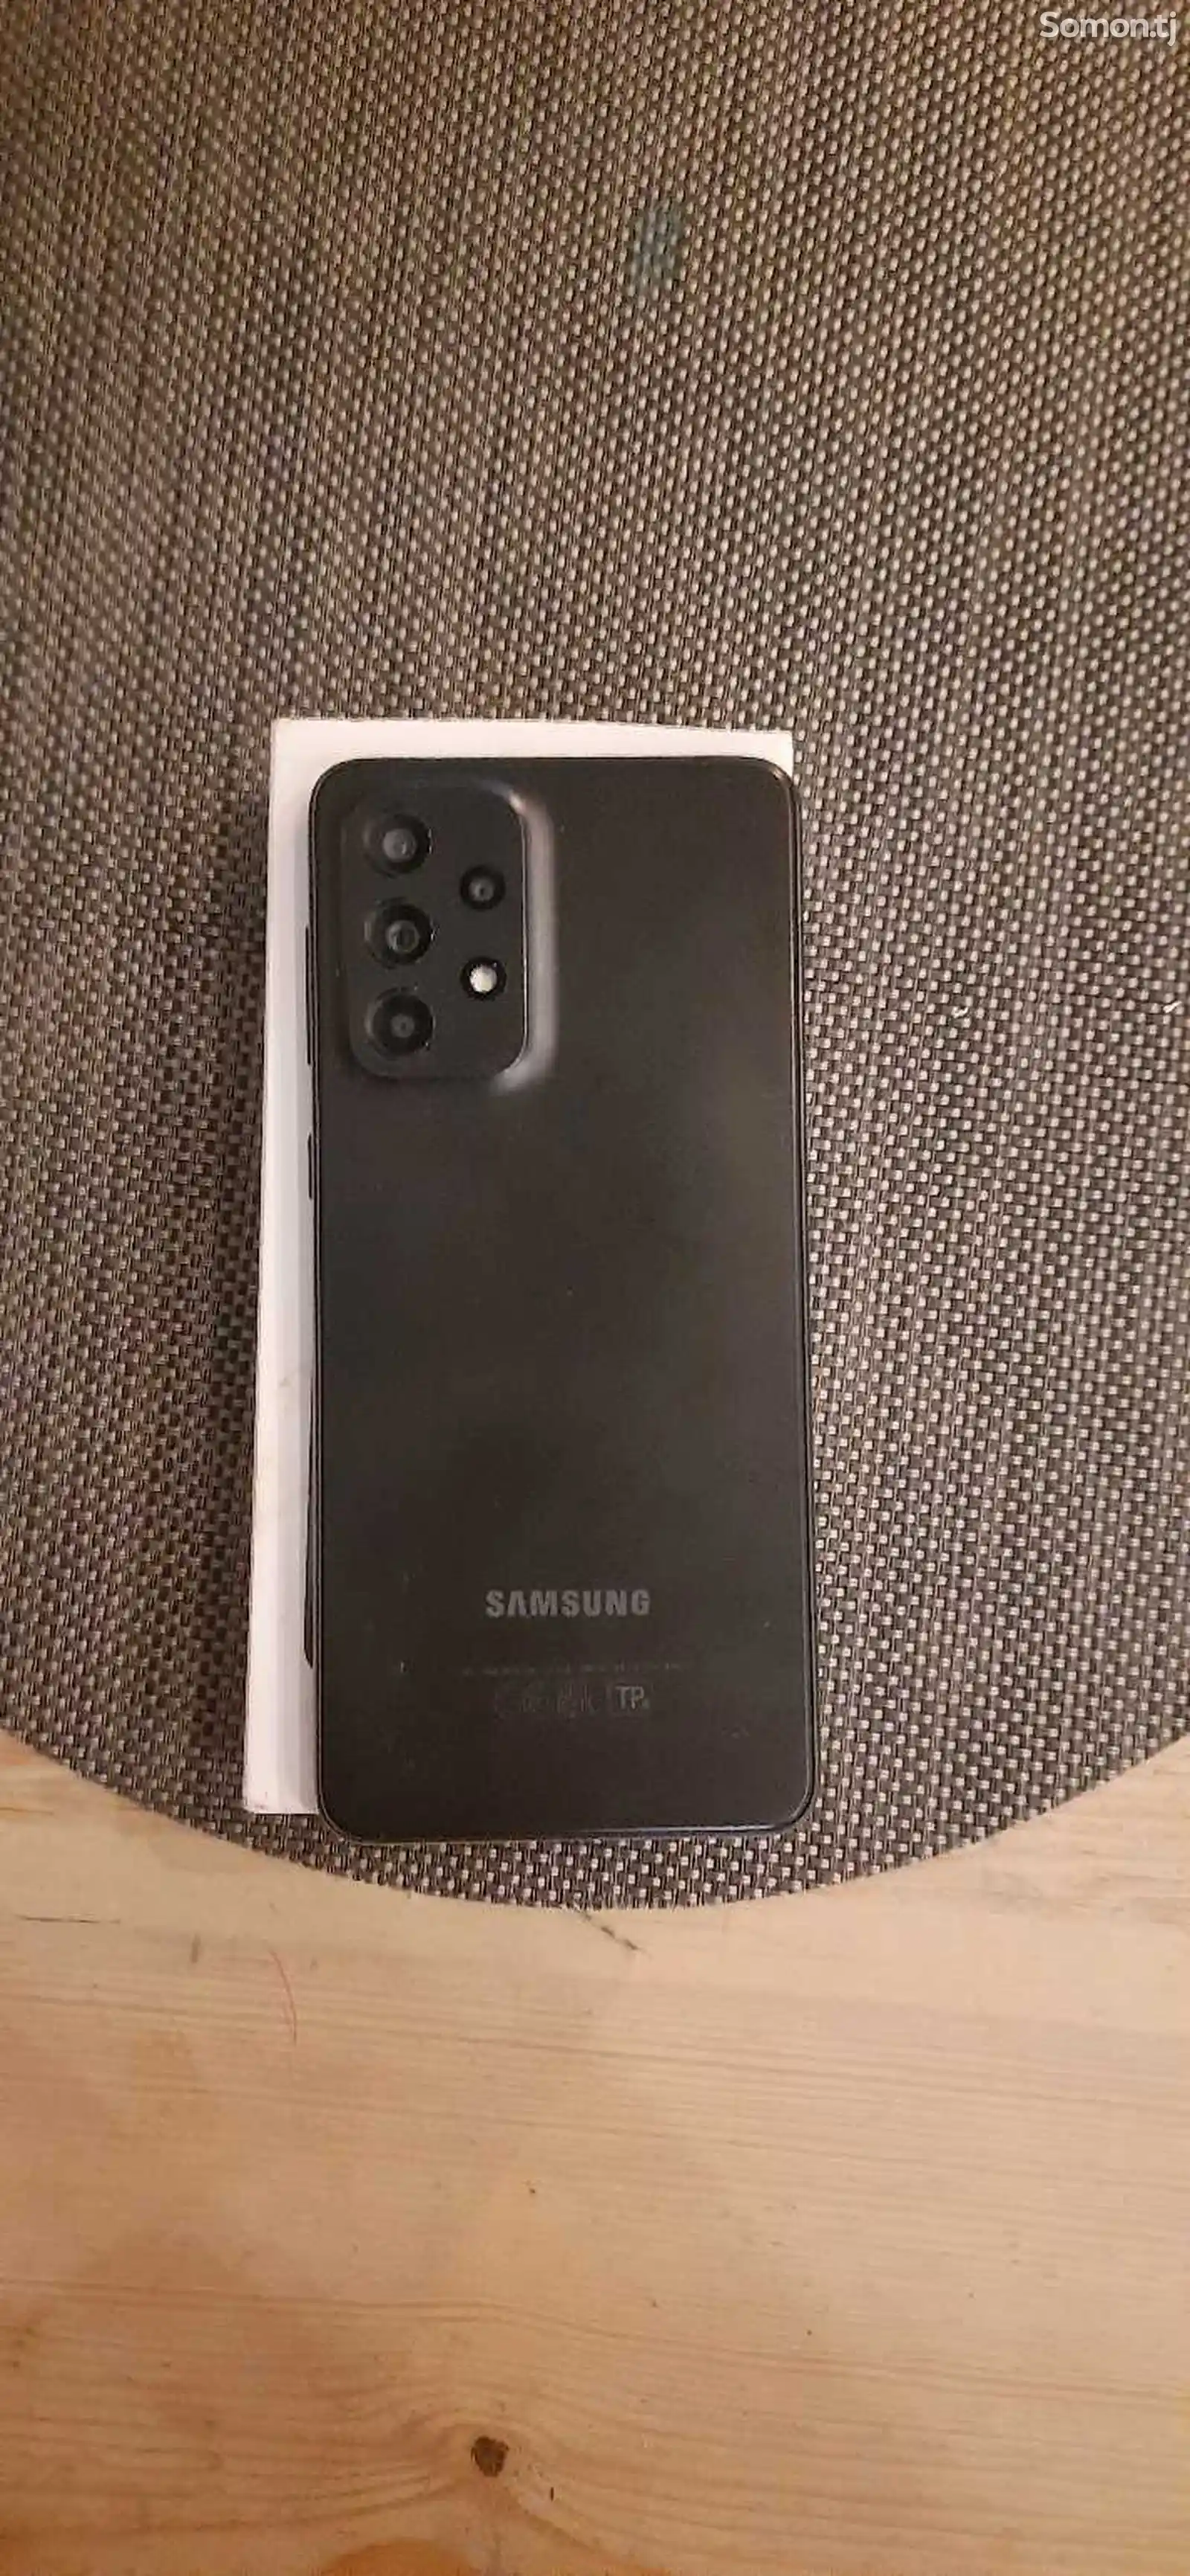 Samsung Galaxy A33 5G-3